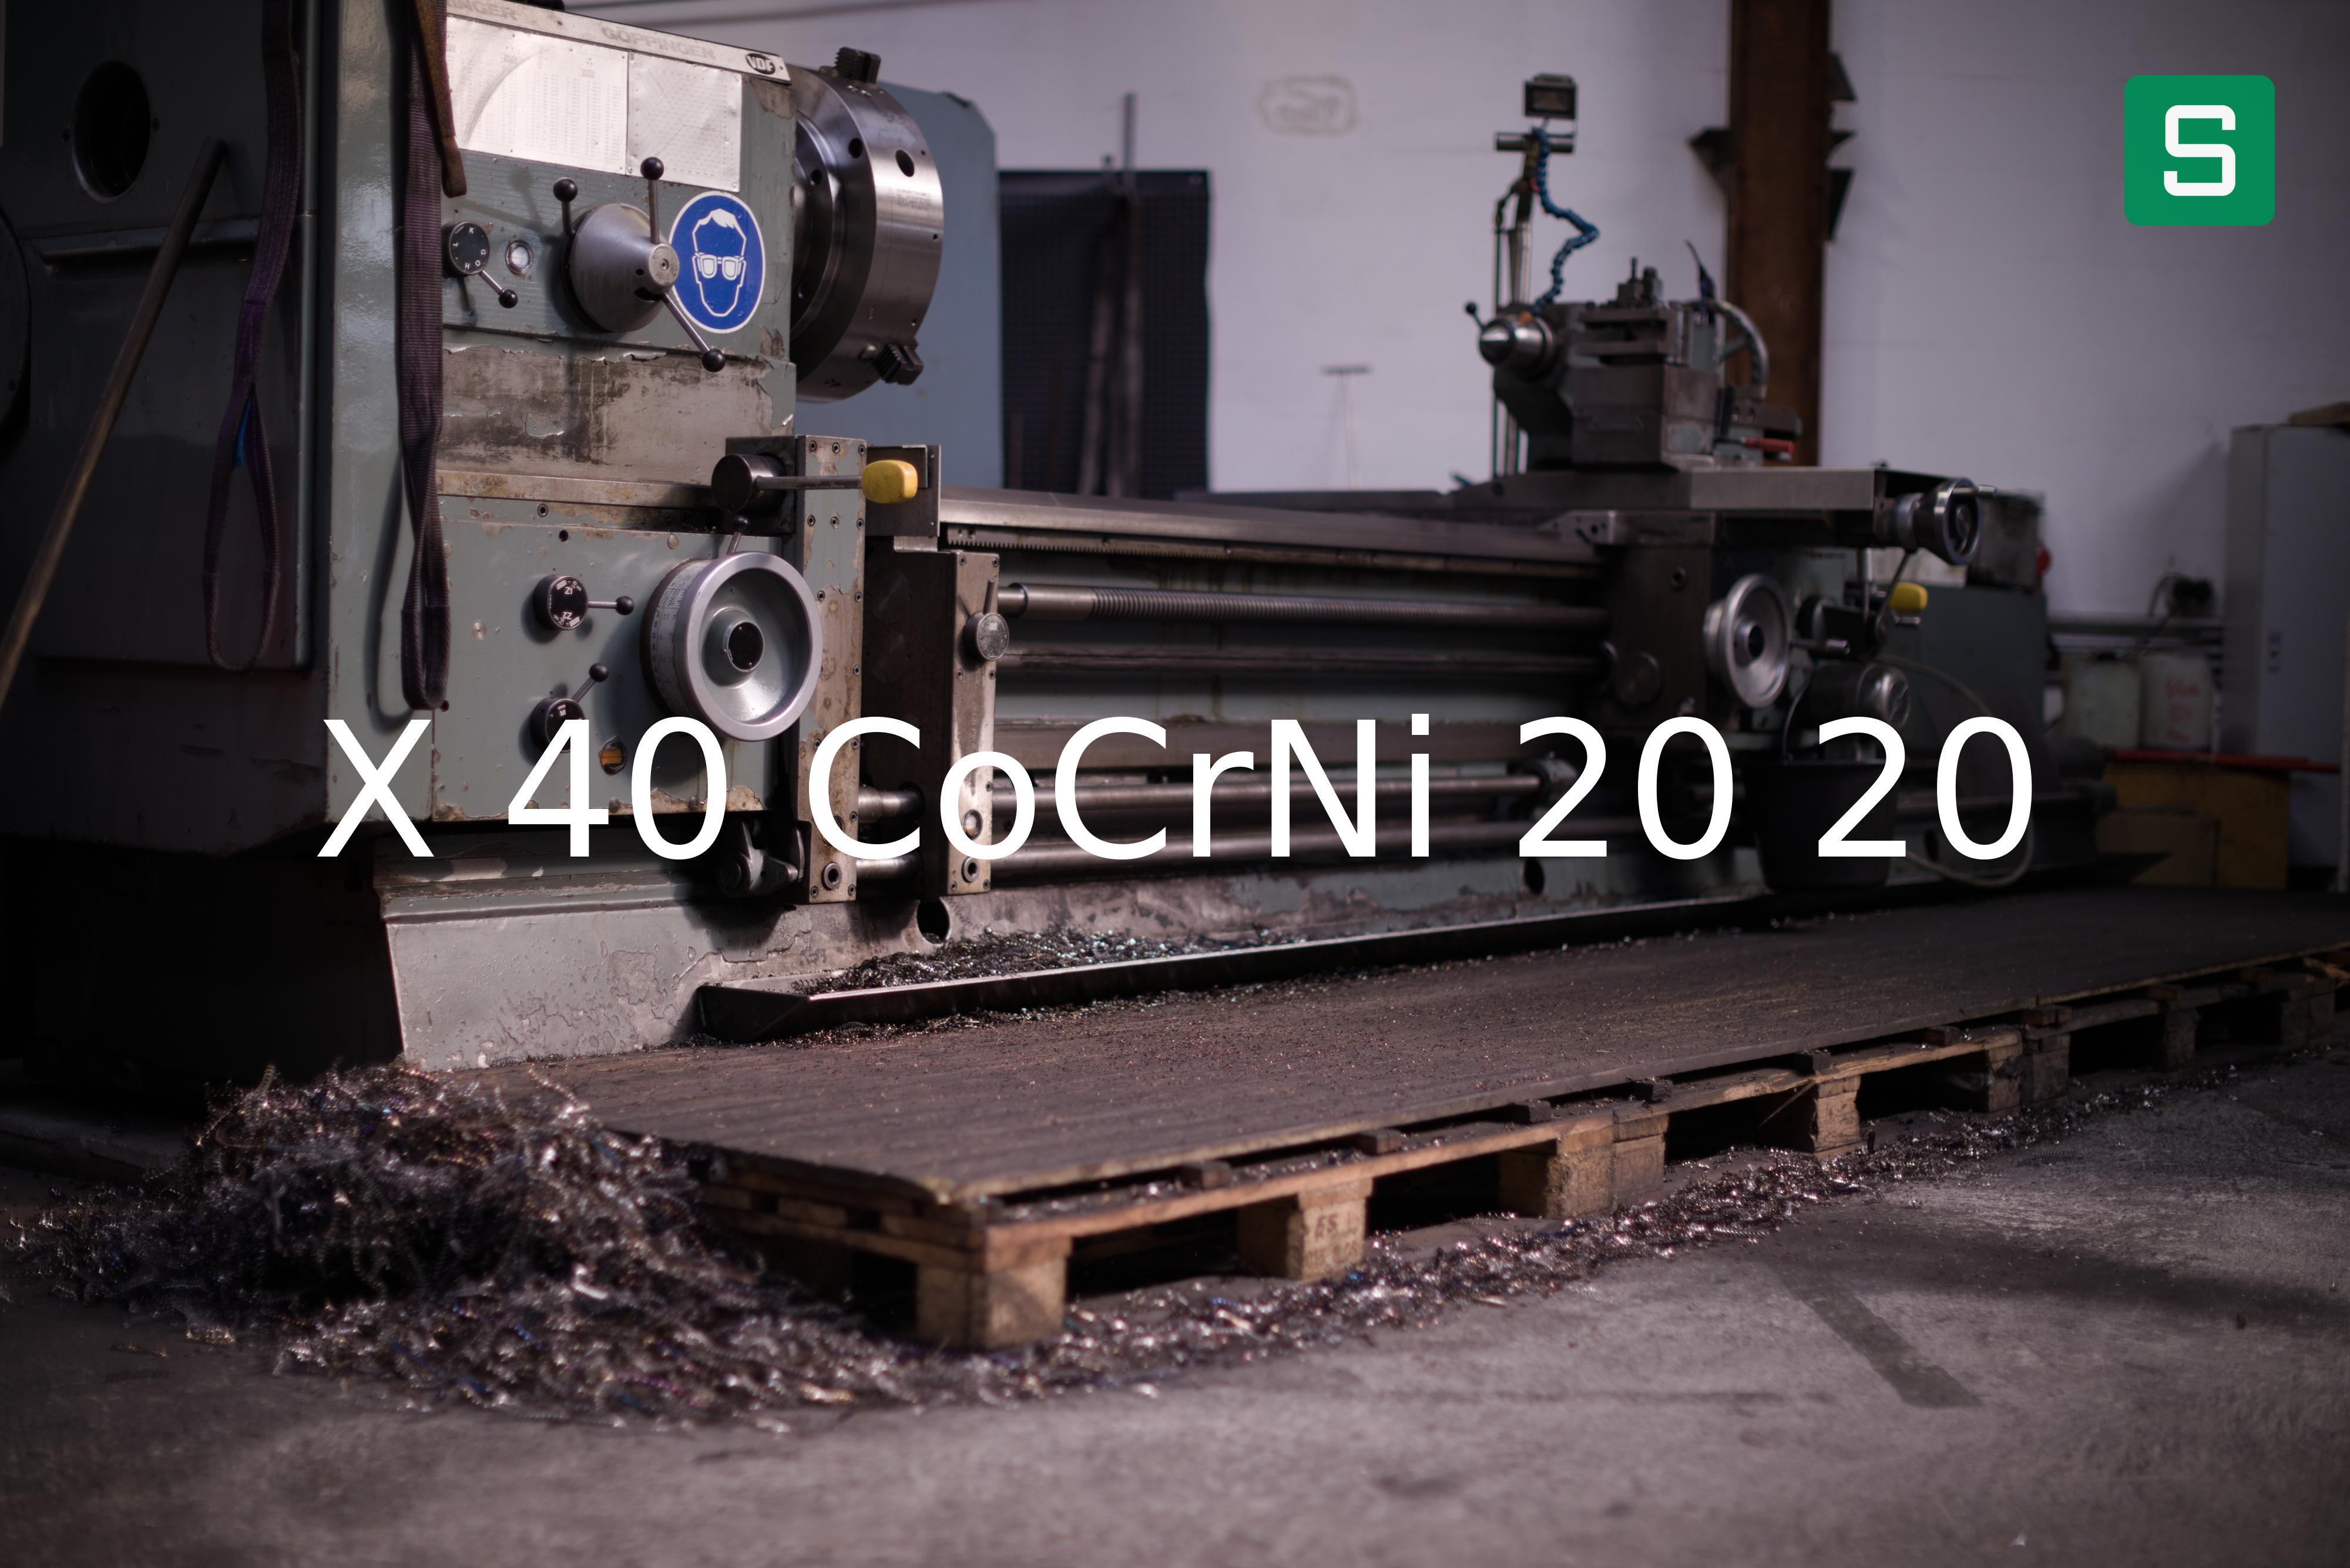 Steel Material: X 40 CoCrNi 20 20